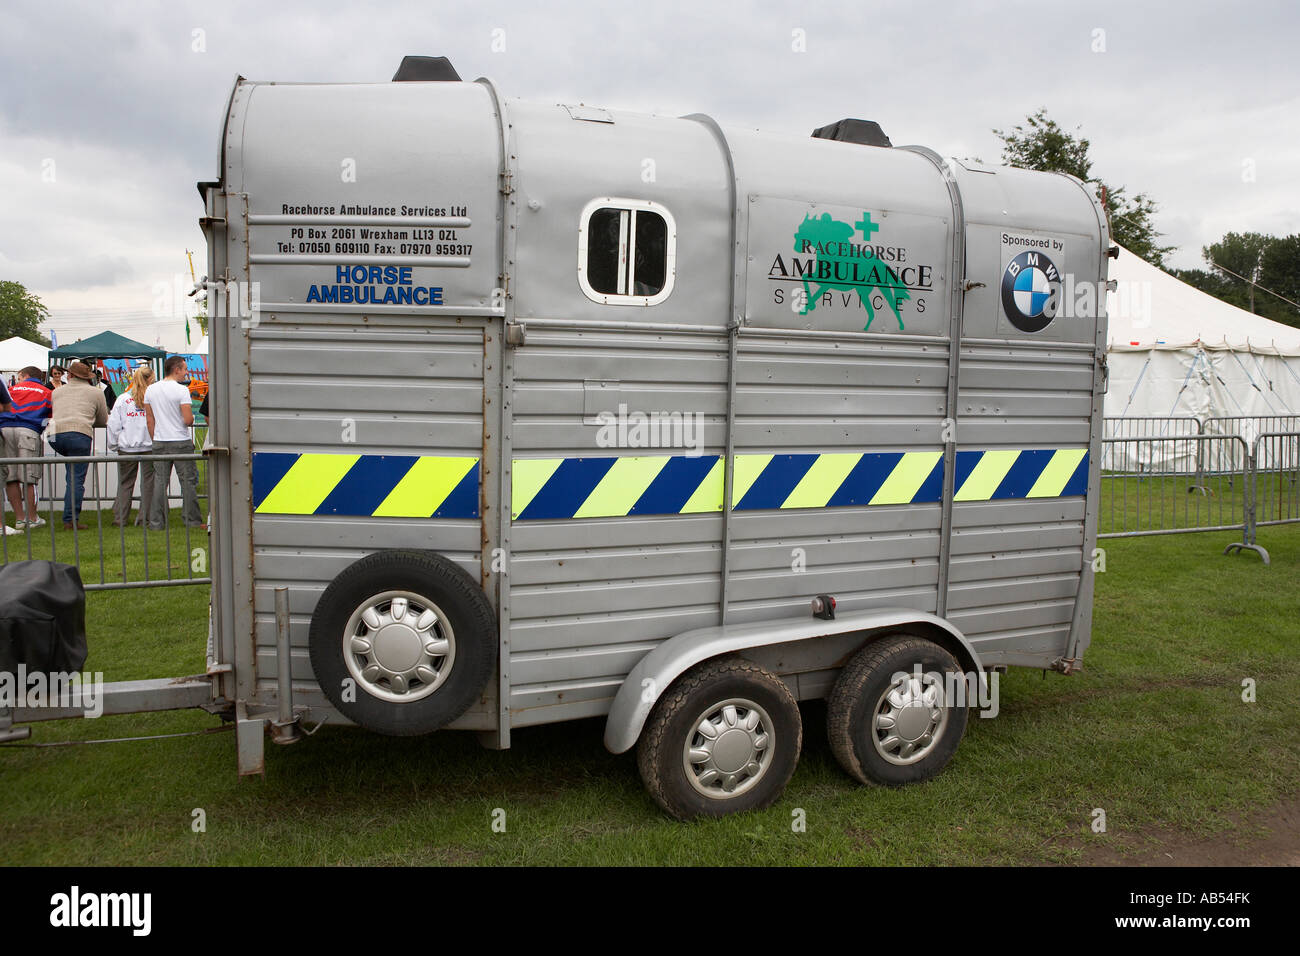 racehorse ambulance west mids agricultural show shrewsbury shropshire england uk Stock Photo